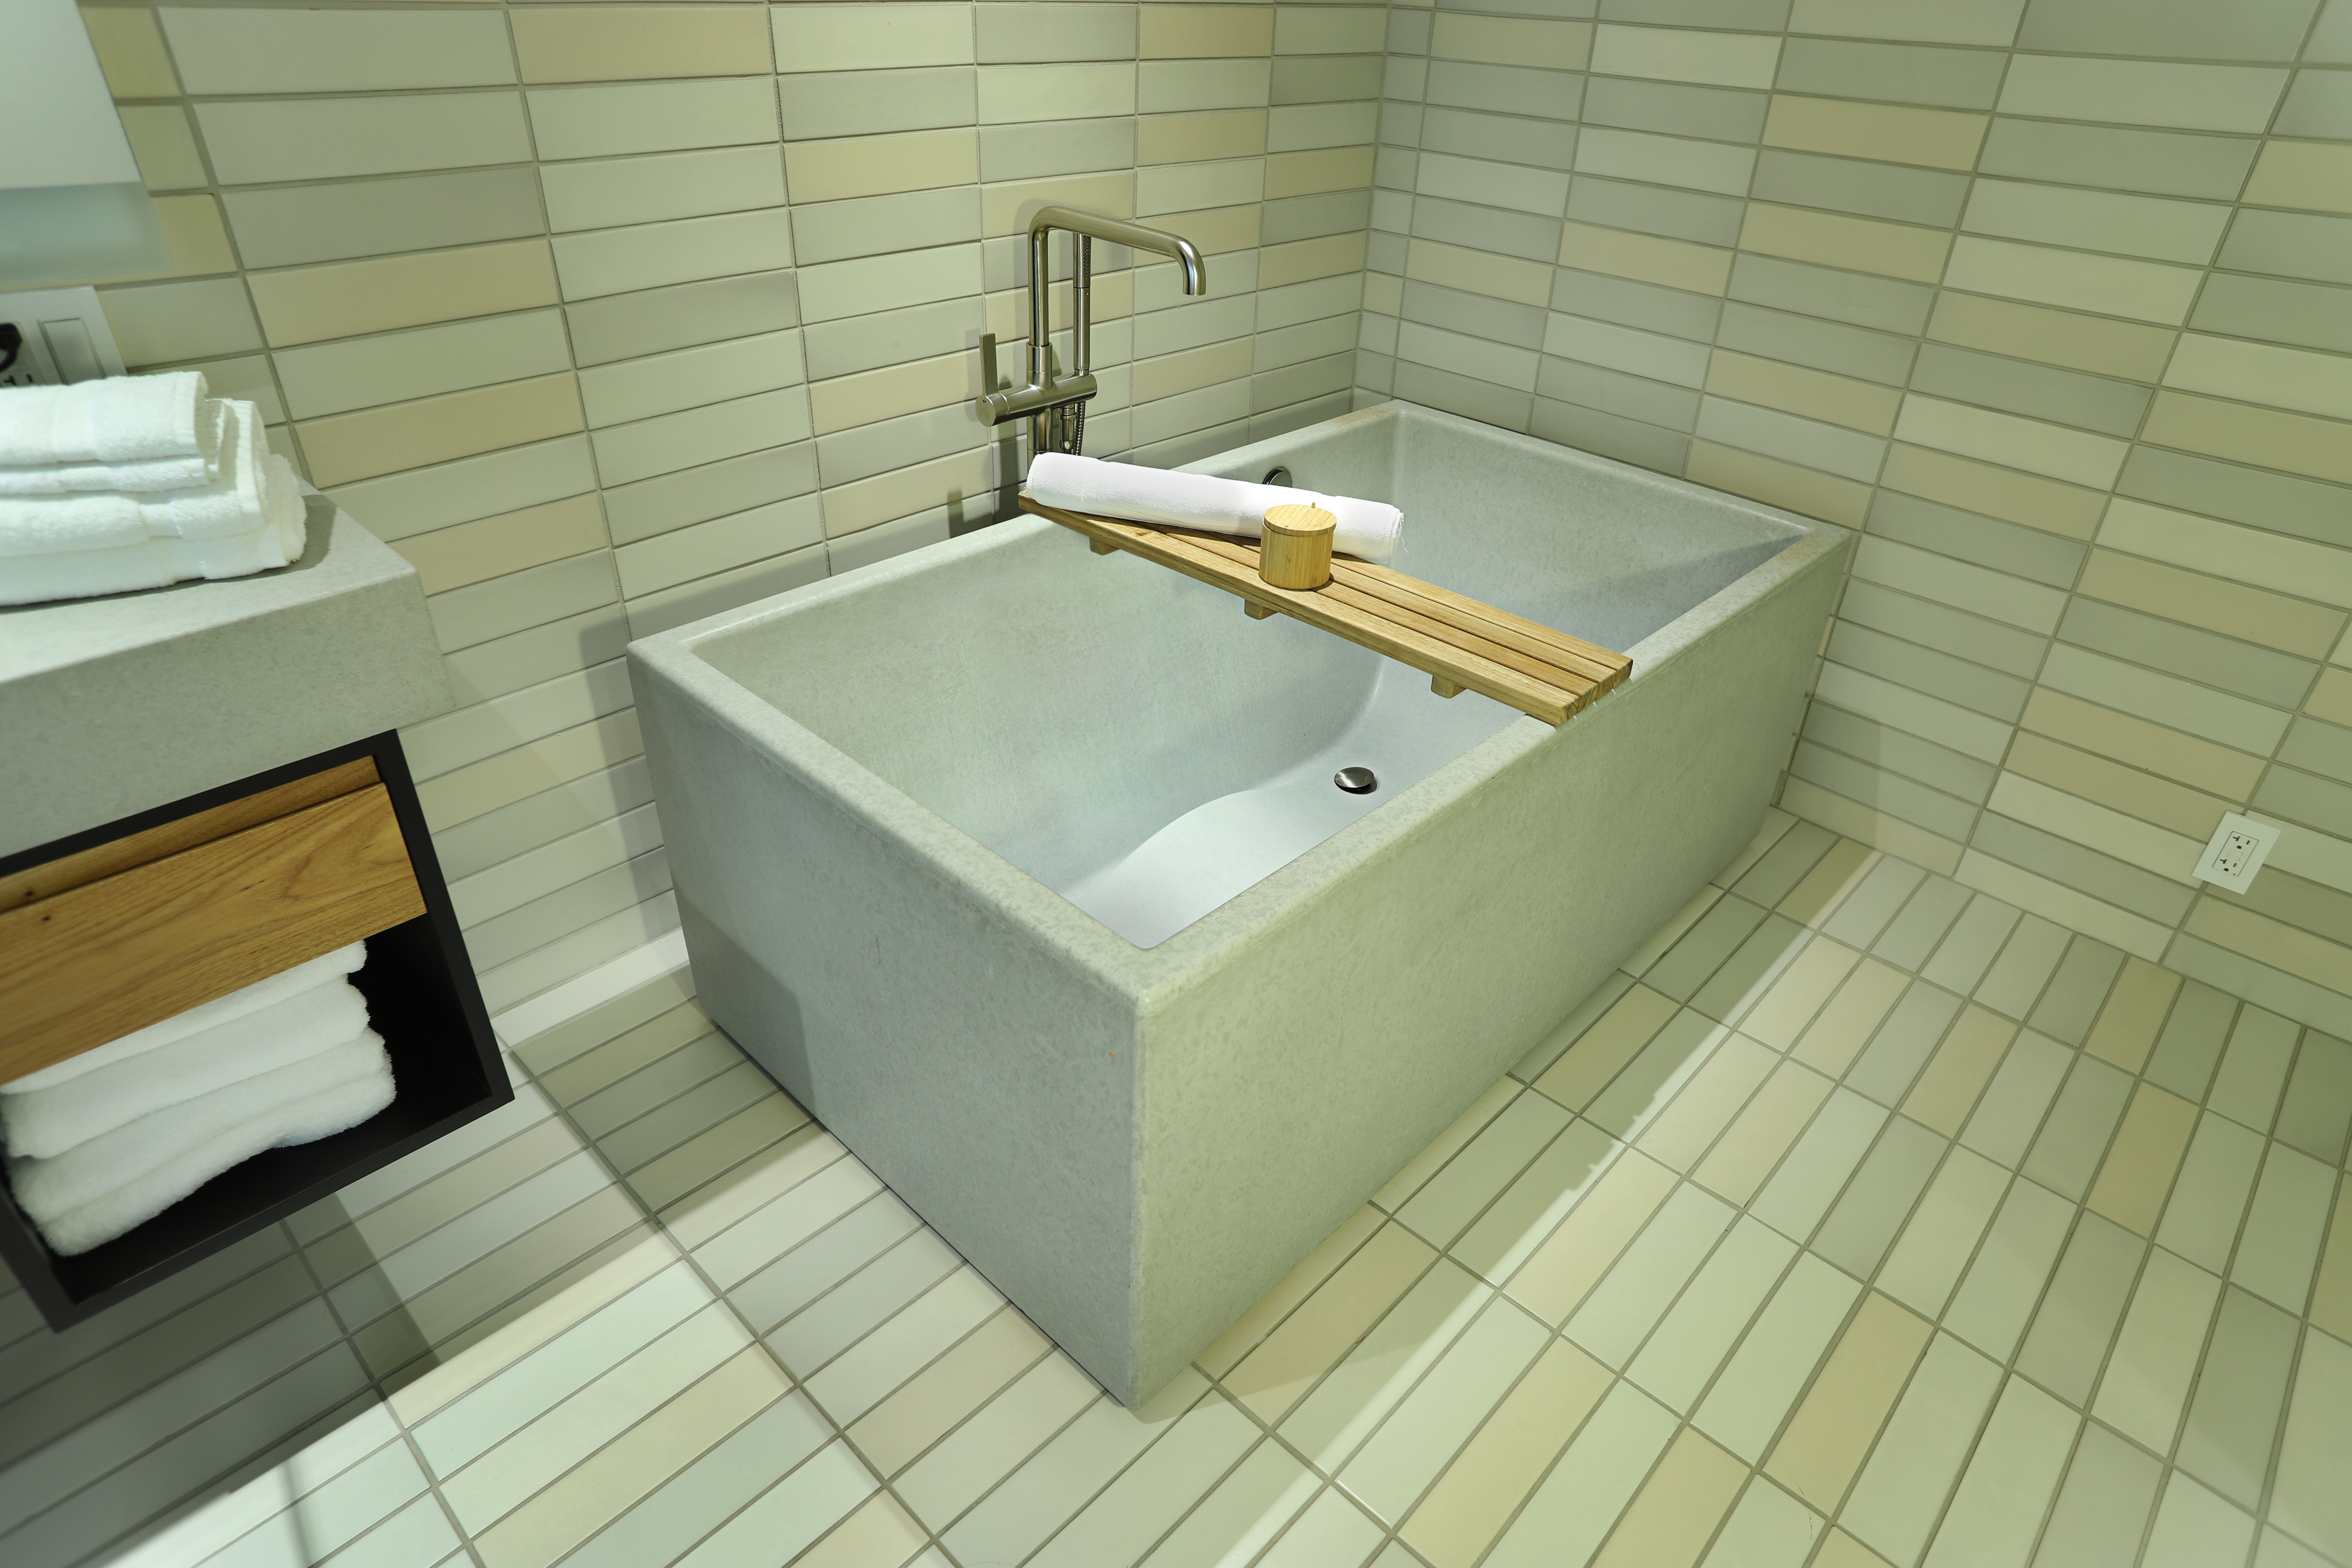 Concrete Bath Tubs From Sonoma Cast Stone, How To Pour A Concrete Bathtub